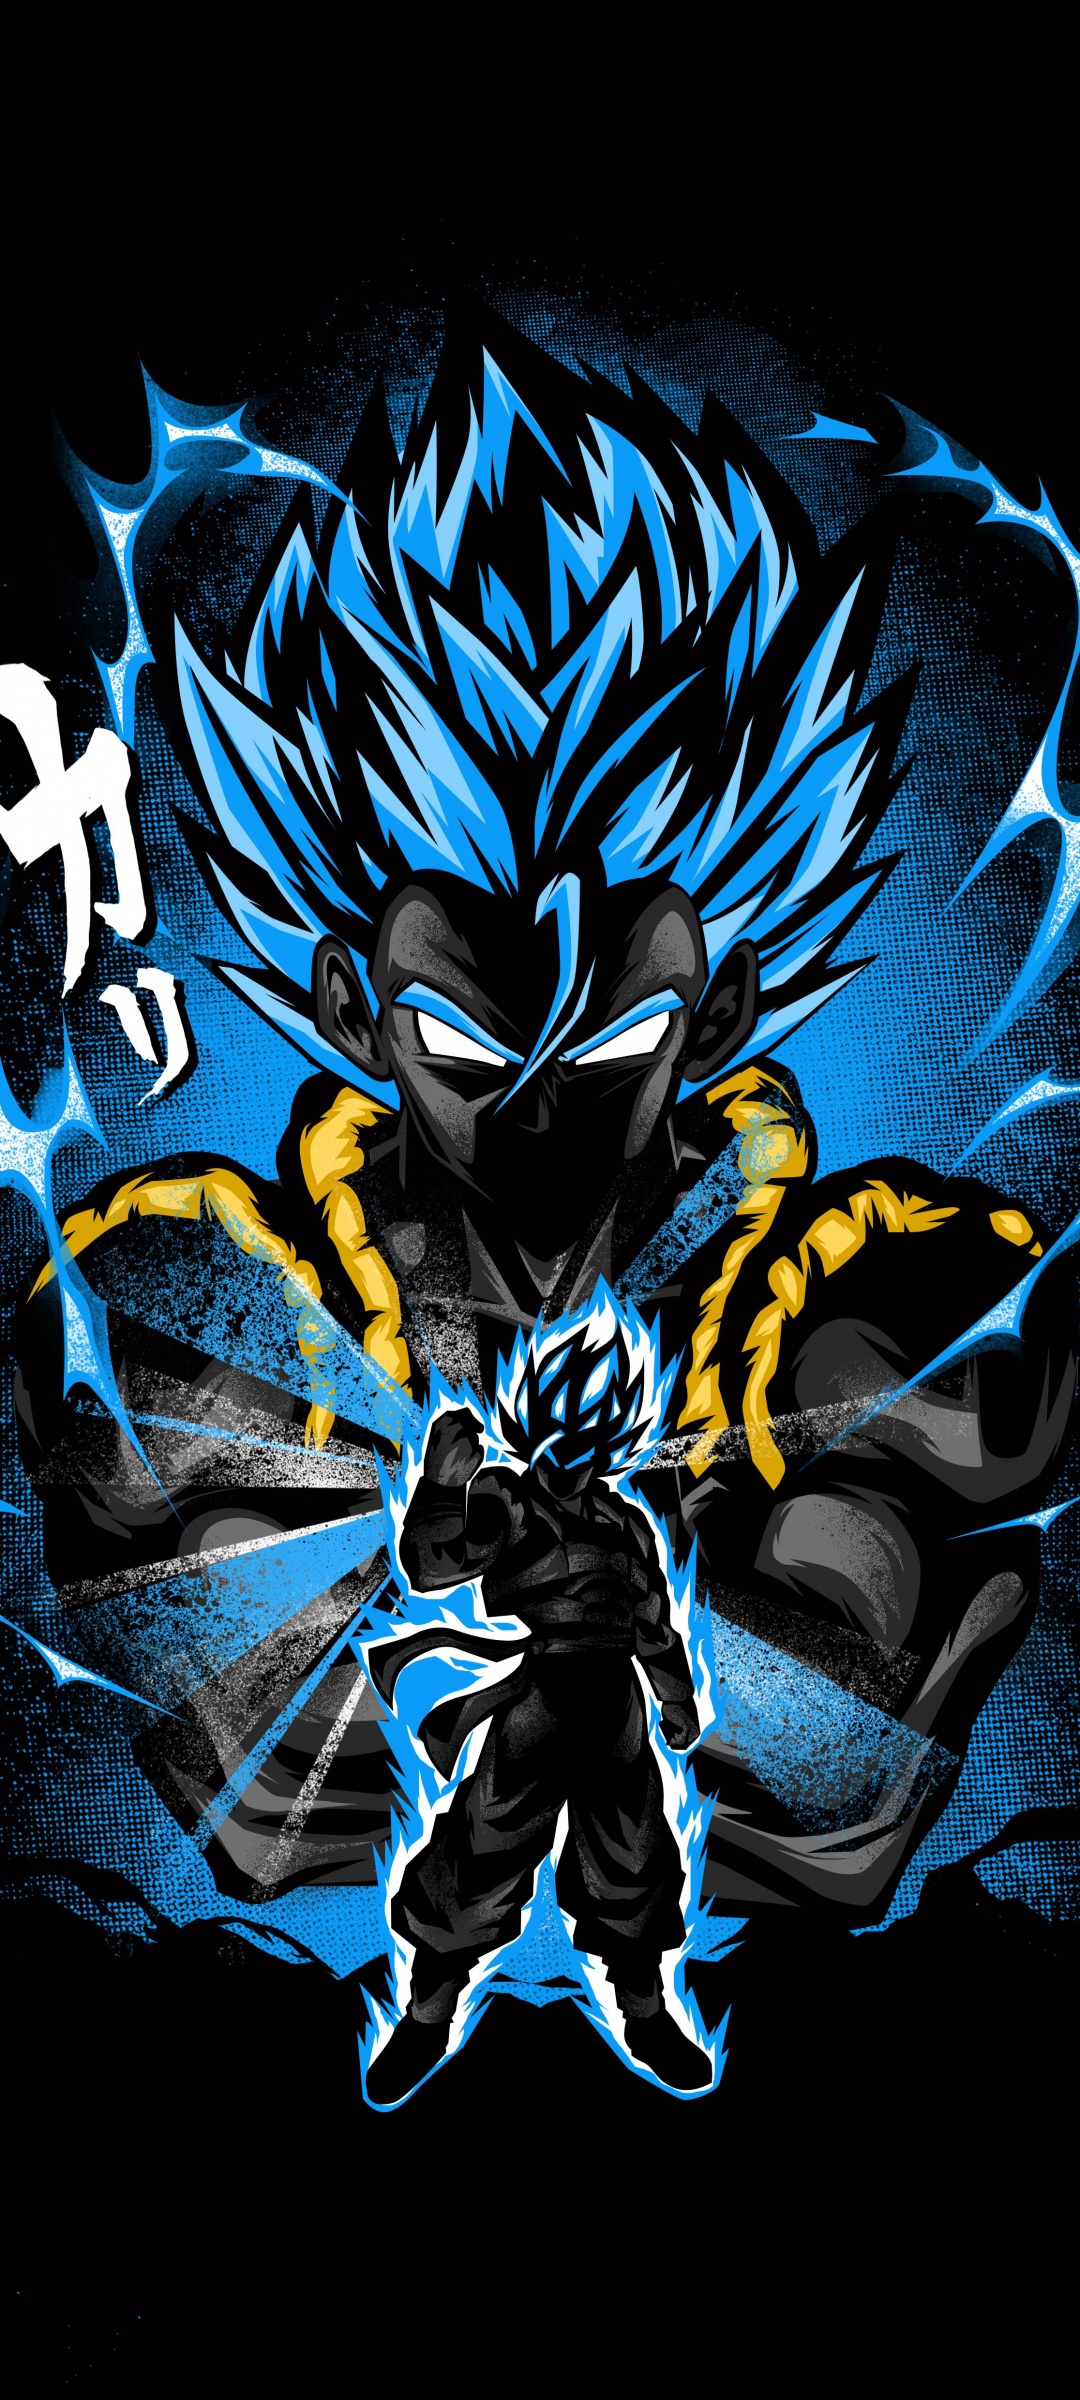 Goku 4K Wallpaper, Fusion attack, Dragon Ball Z, Anime